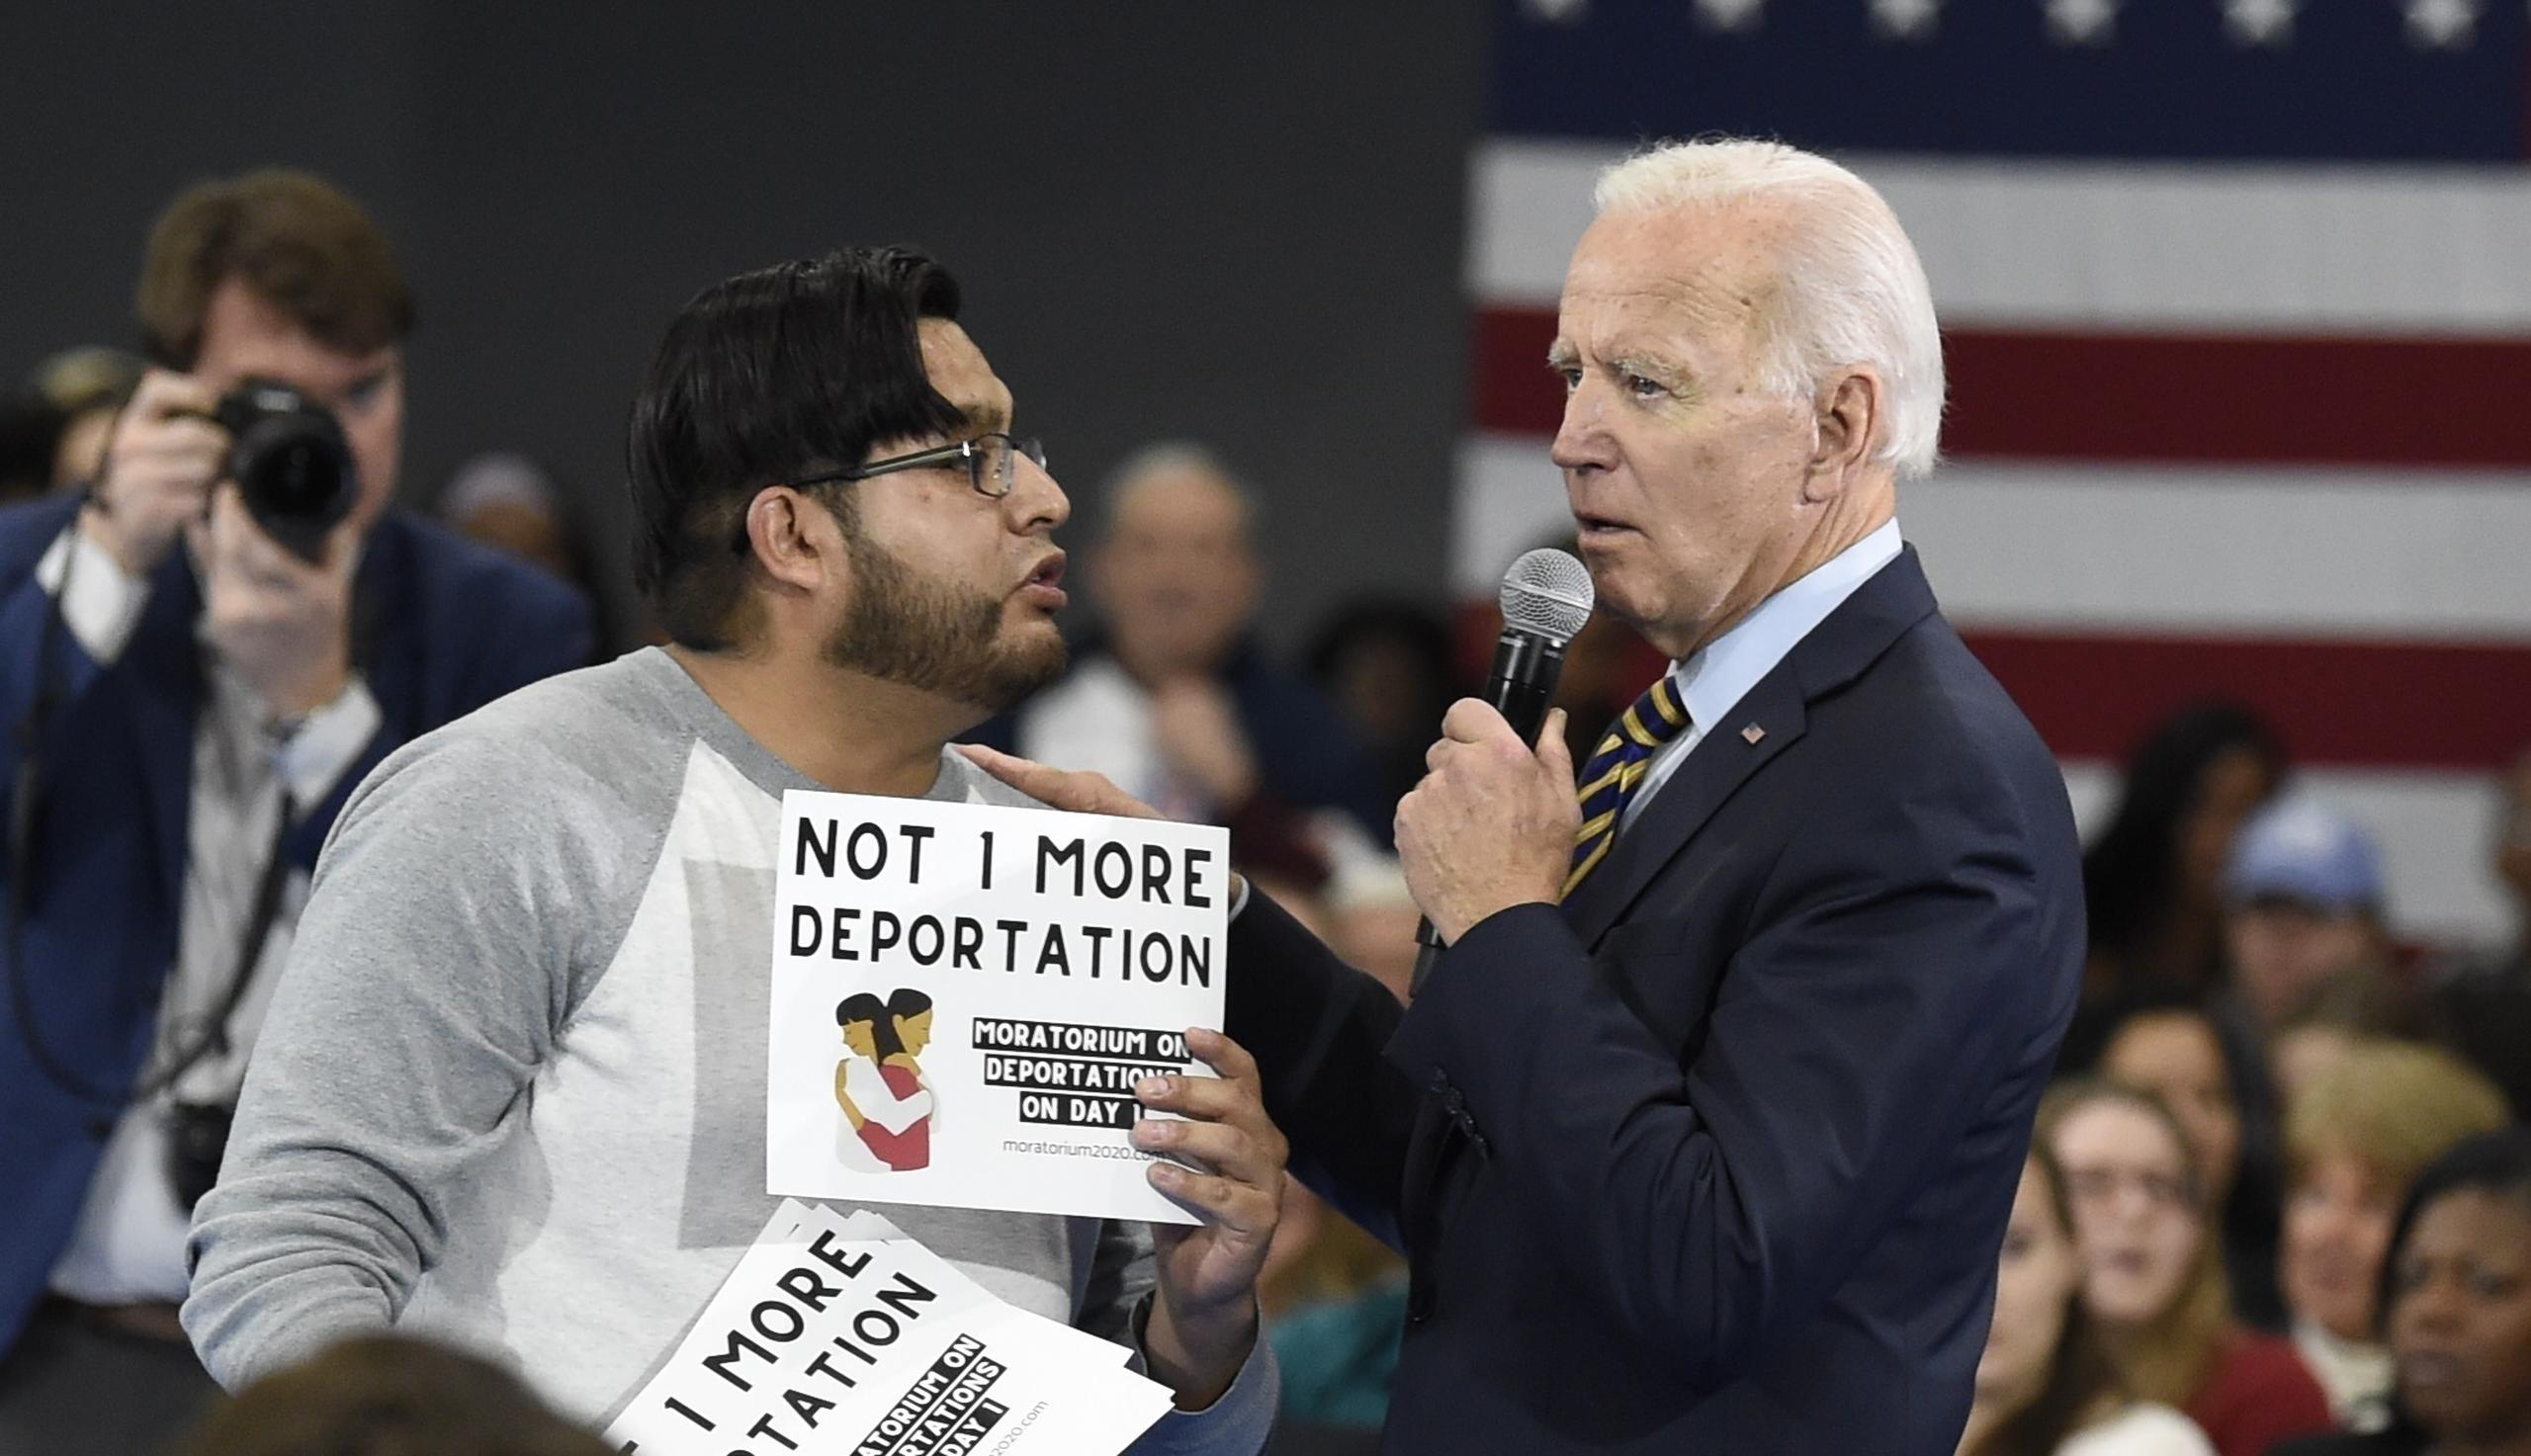 Joe Biden habla con un manifestante que se opone a su posición sobre las deportaciones durante un mitin en noviembre de 2019 en la Universidad Lander, en Greenwood, Carolina del Sur.